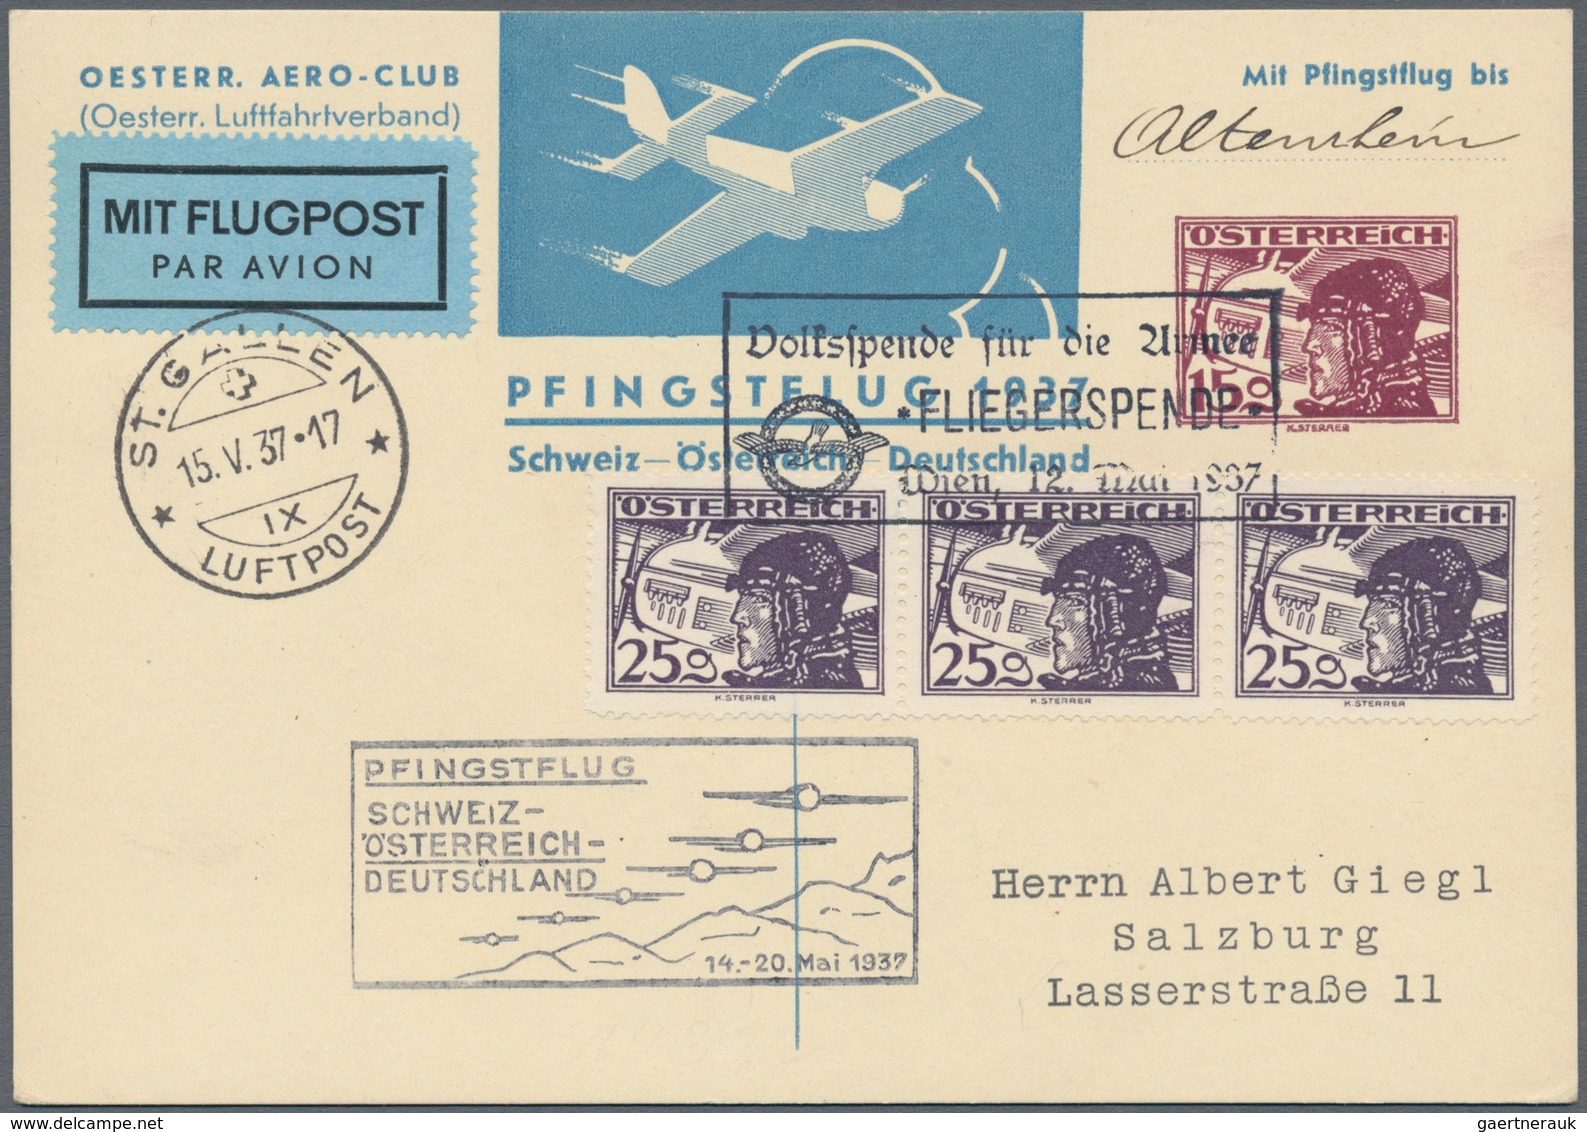 Österreich - Flugpost: 1918/1938, gehaltvolle Sammlung mit über 250 Flugpostbelegen, chronologisch s